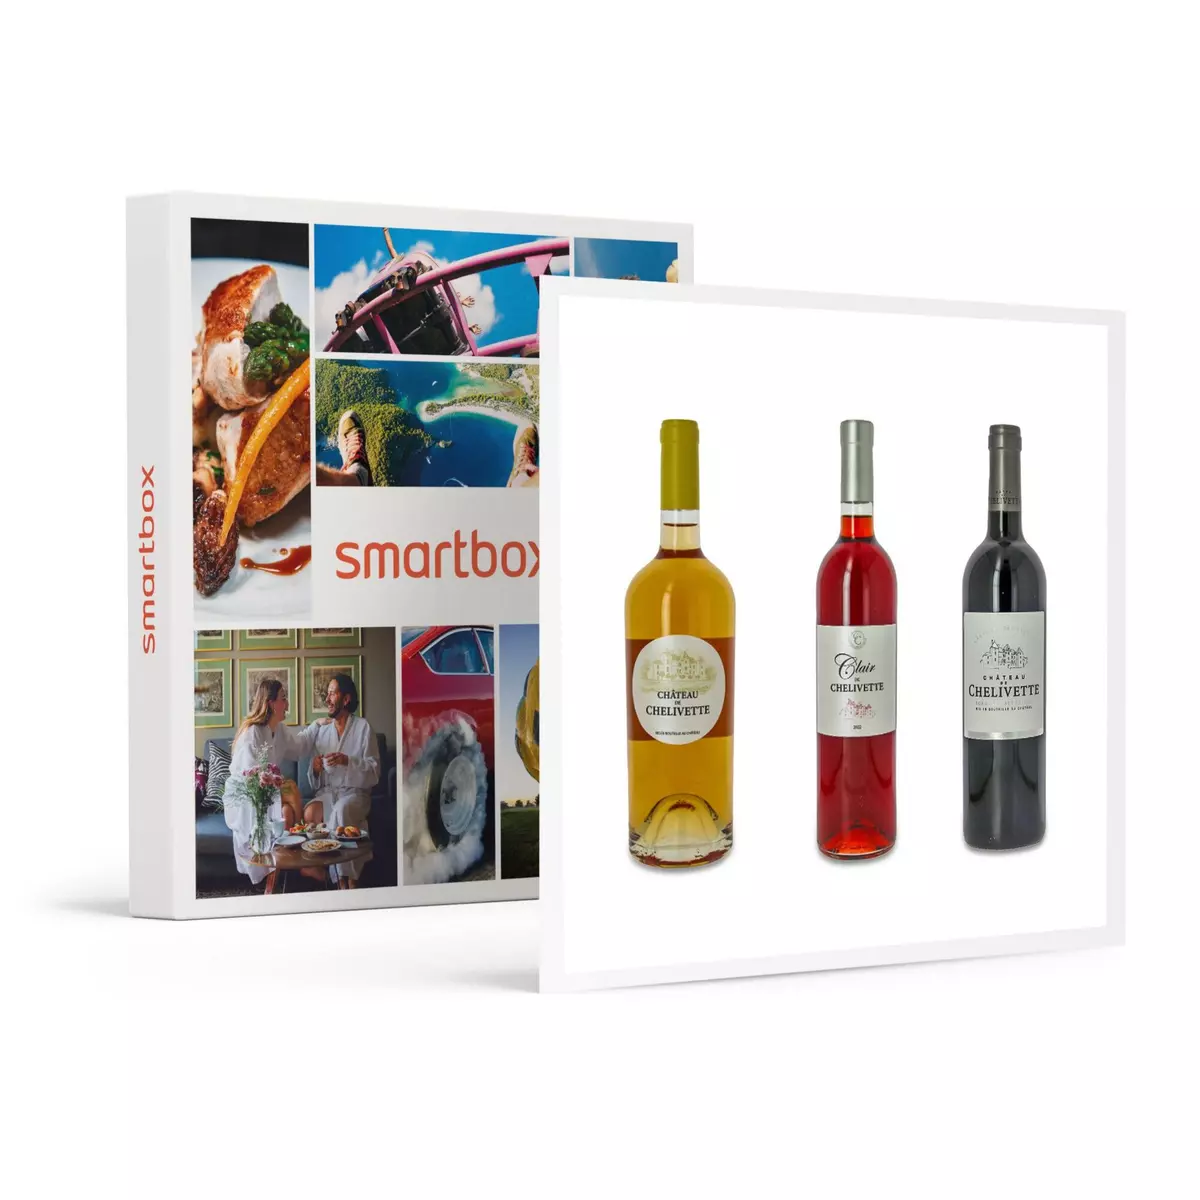 Smartbox Livraison de 6 bouteilles de vin Chelivette rouge et rosé à domicile - Coffret Cadeau Gastronomie